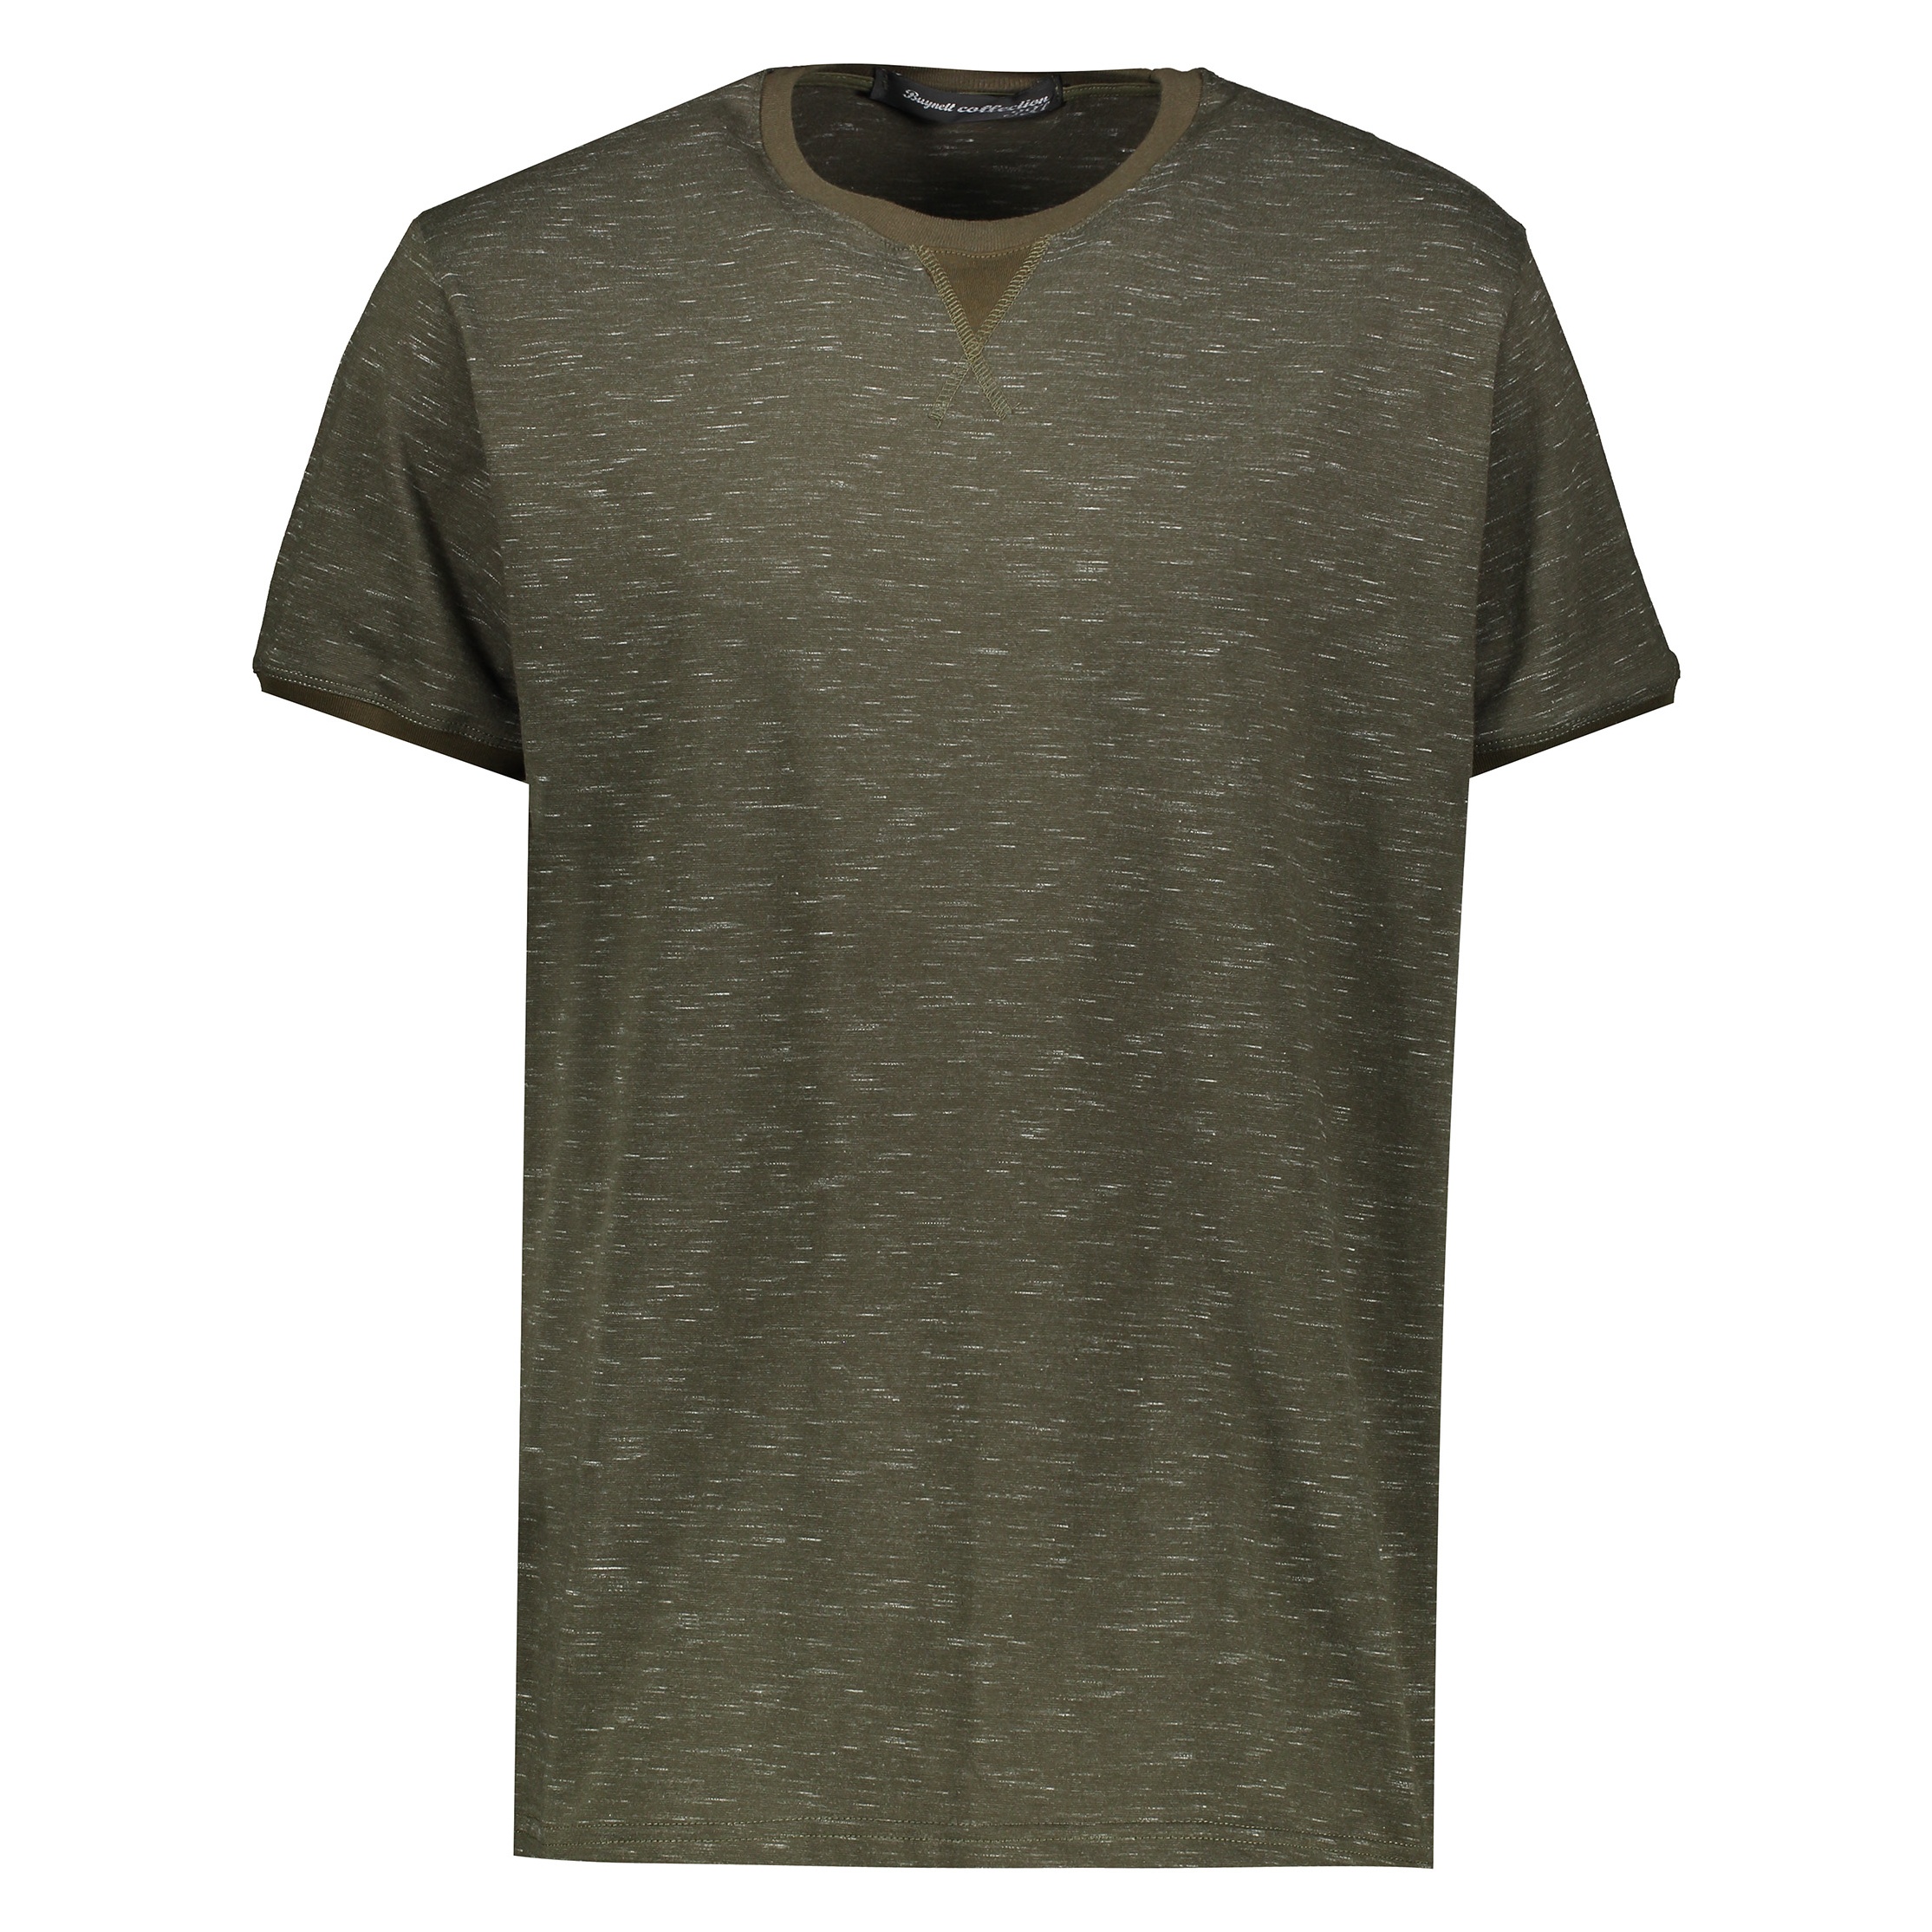 نقد و بررسی تی شرت آستین کوتاه مردانه باینت کد btt 295-2 توسط خریداران